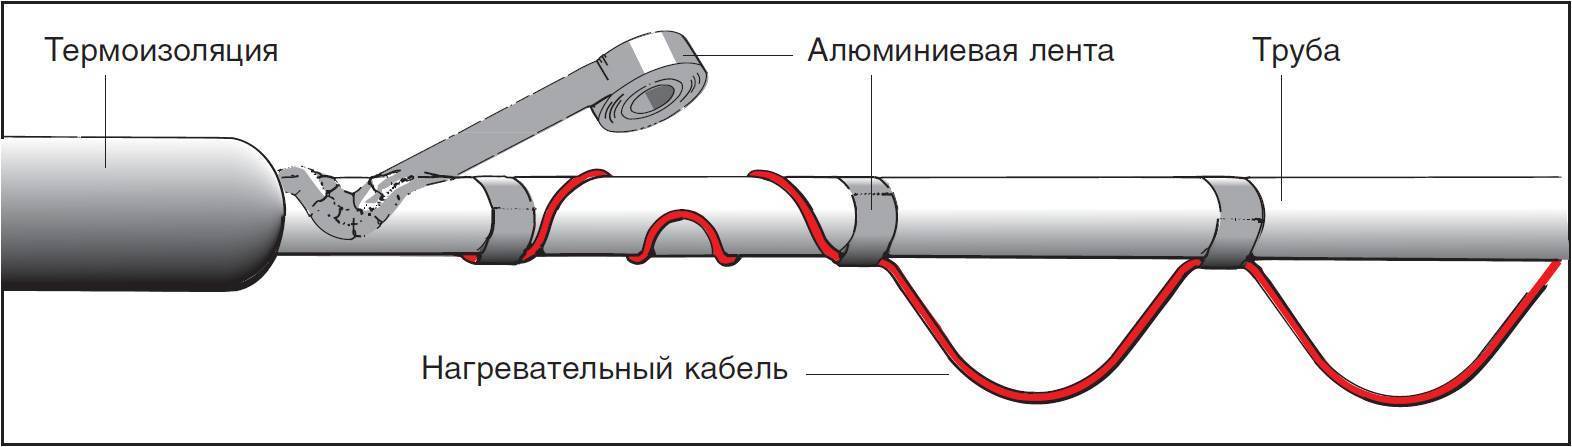 Греющий кабель для канализационных труб: виды и установка